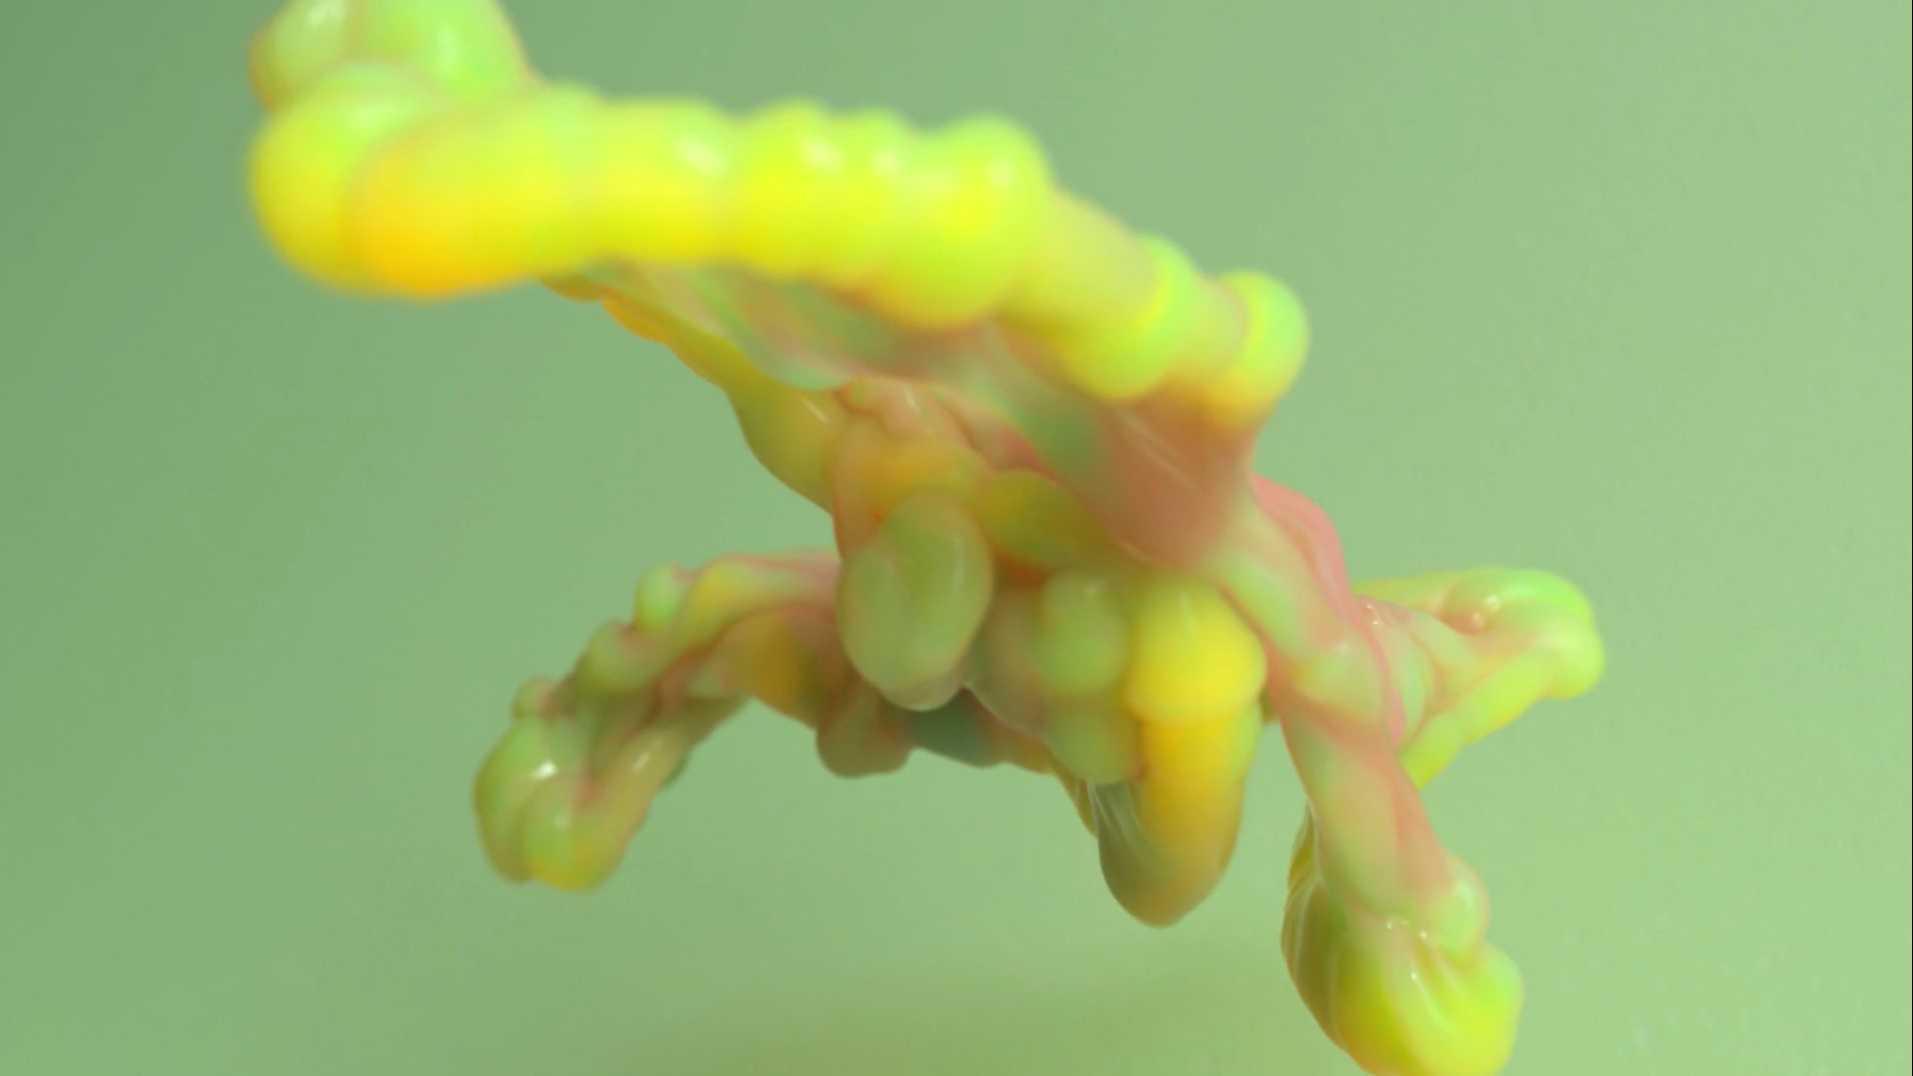 治愈系视觉短片《珊瑚开花》